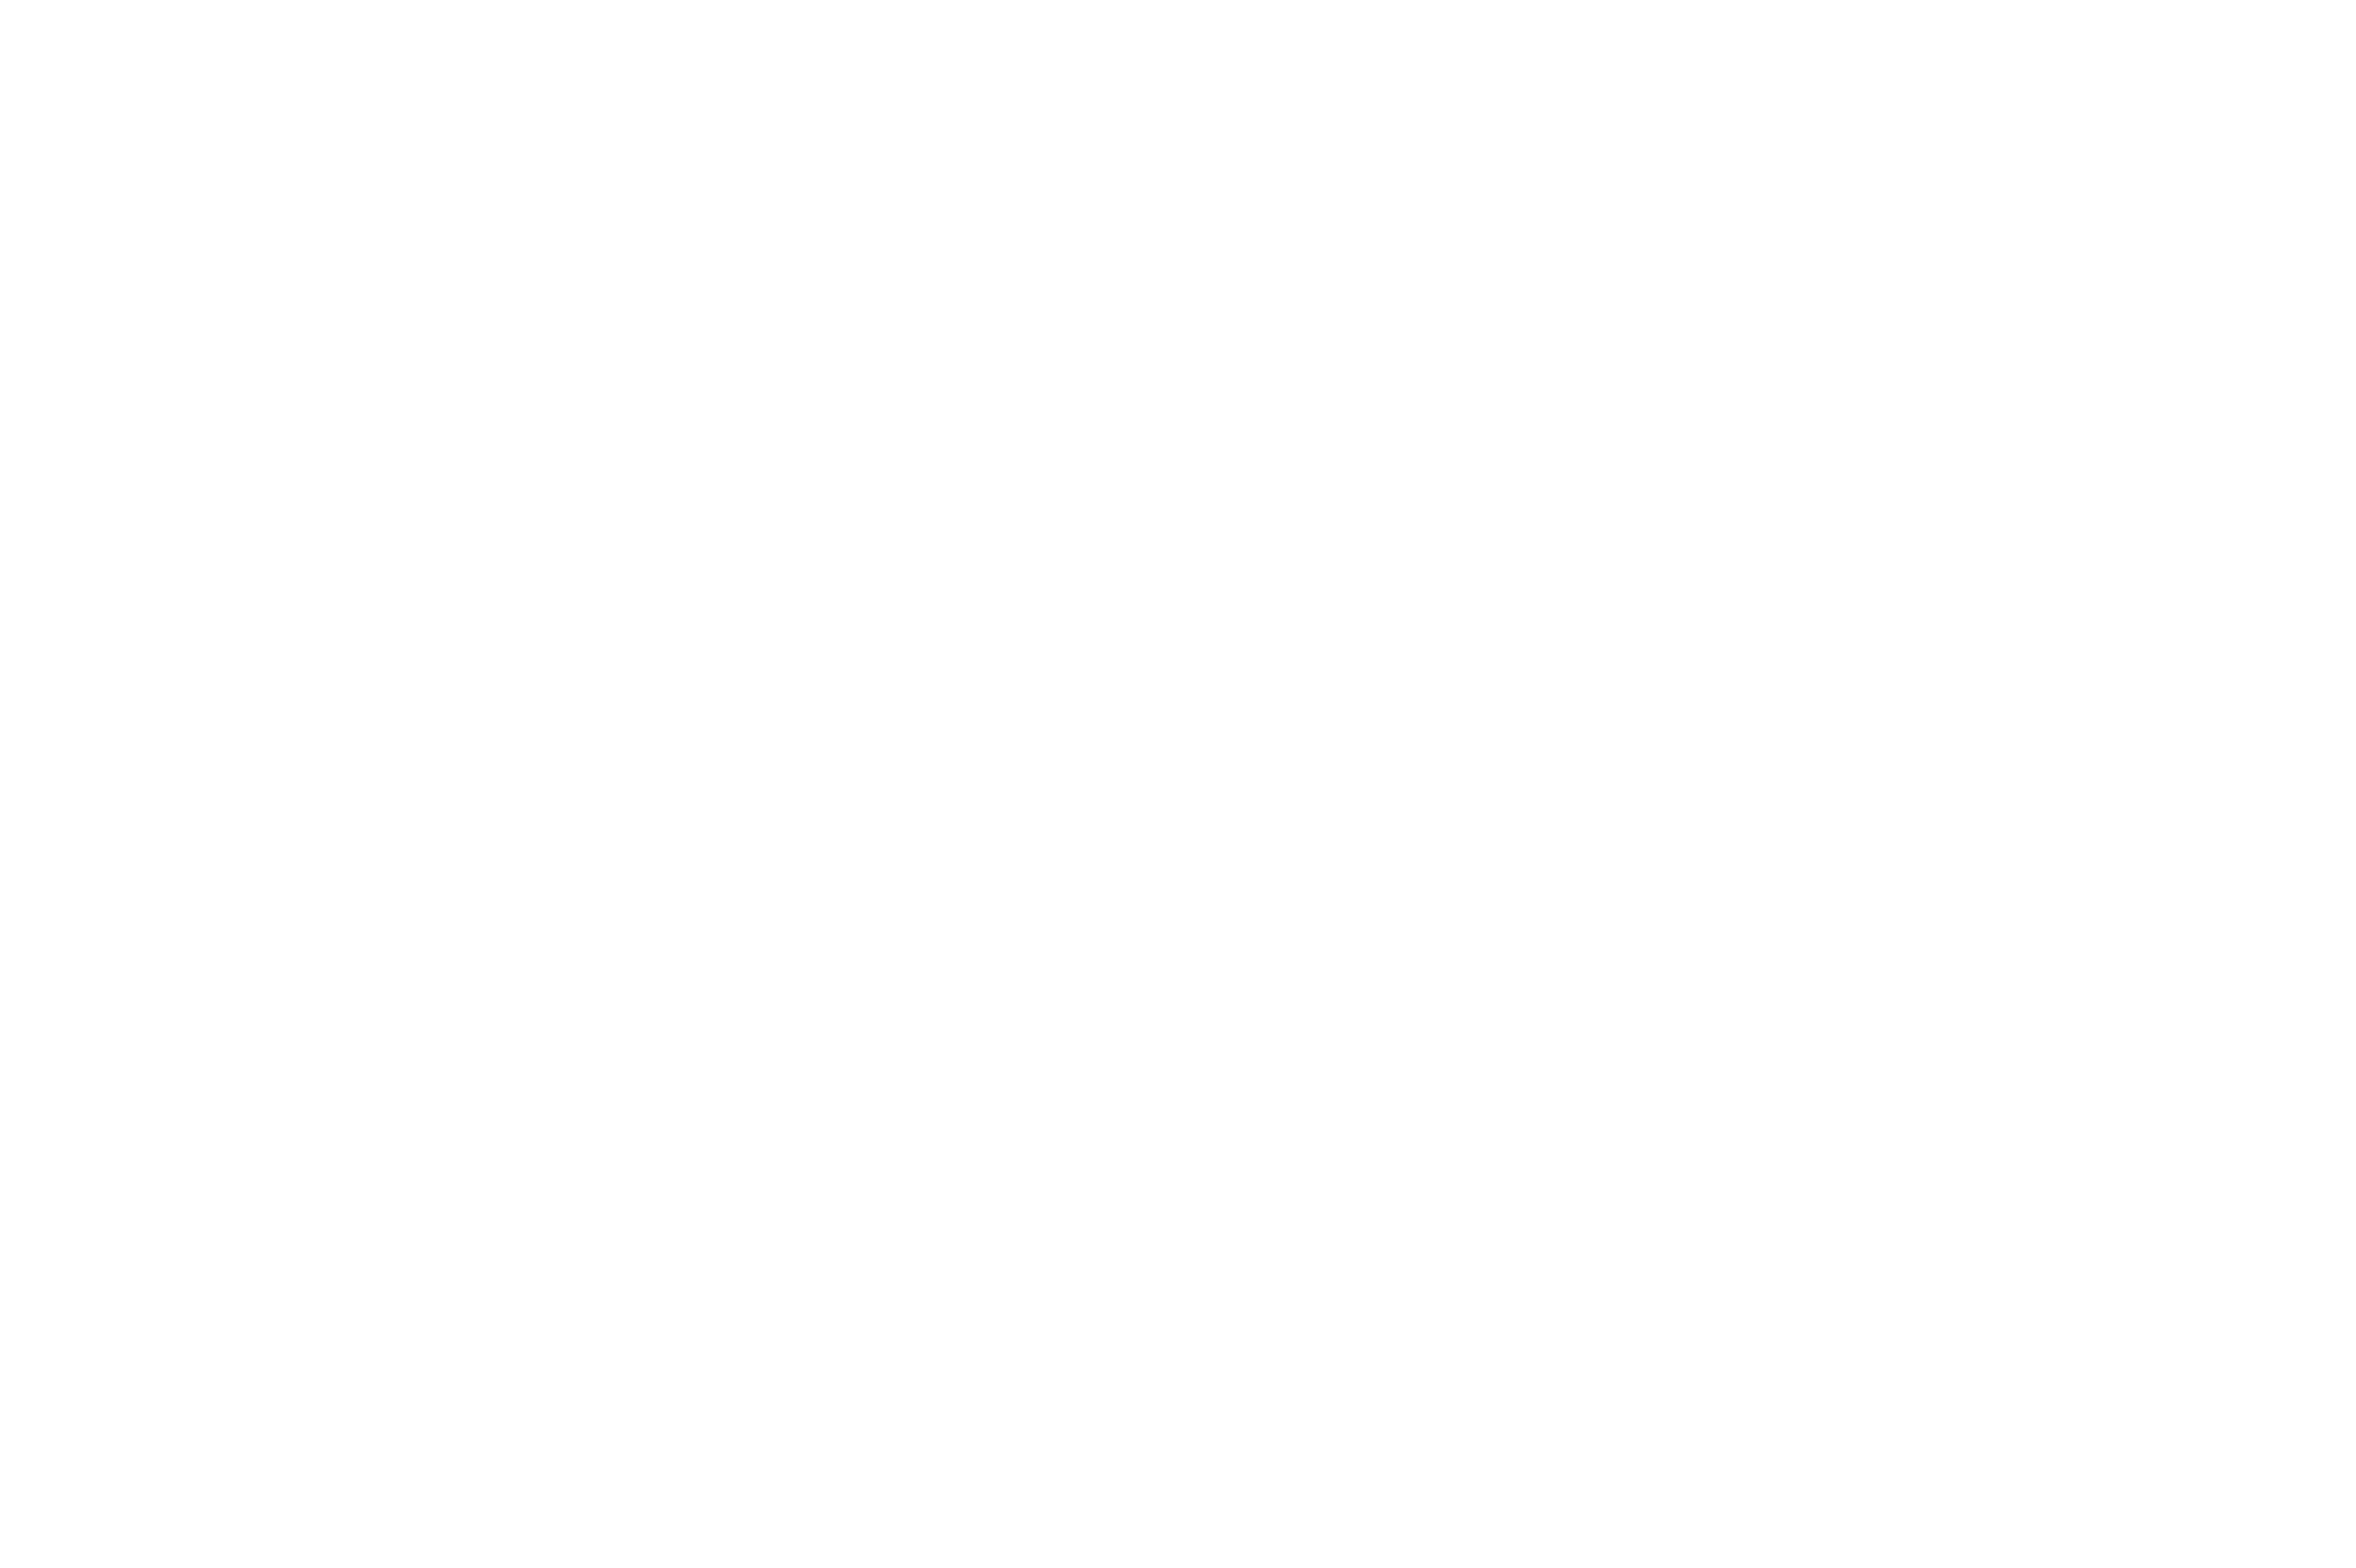 Servicio técnico Samsung